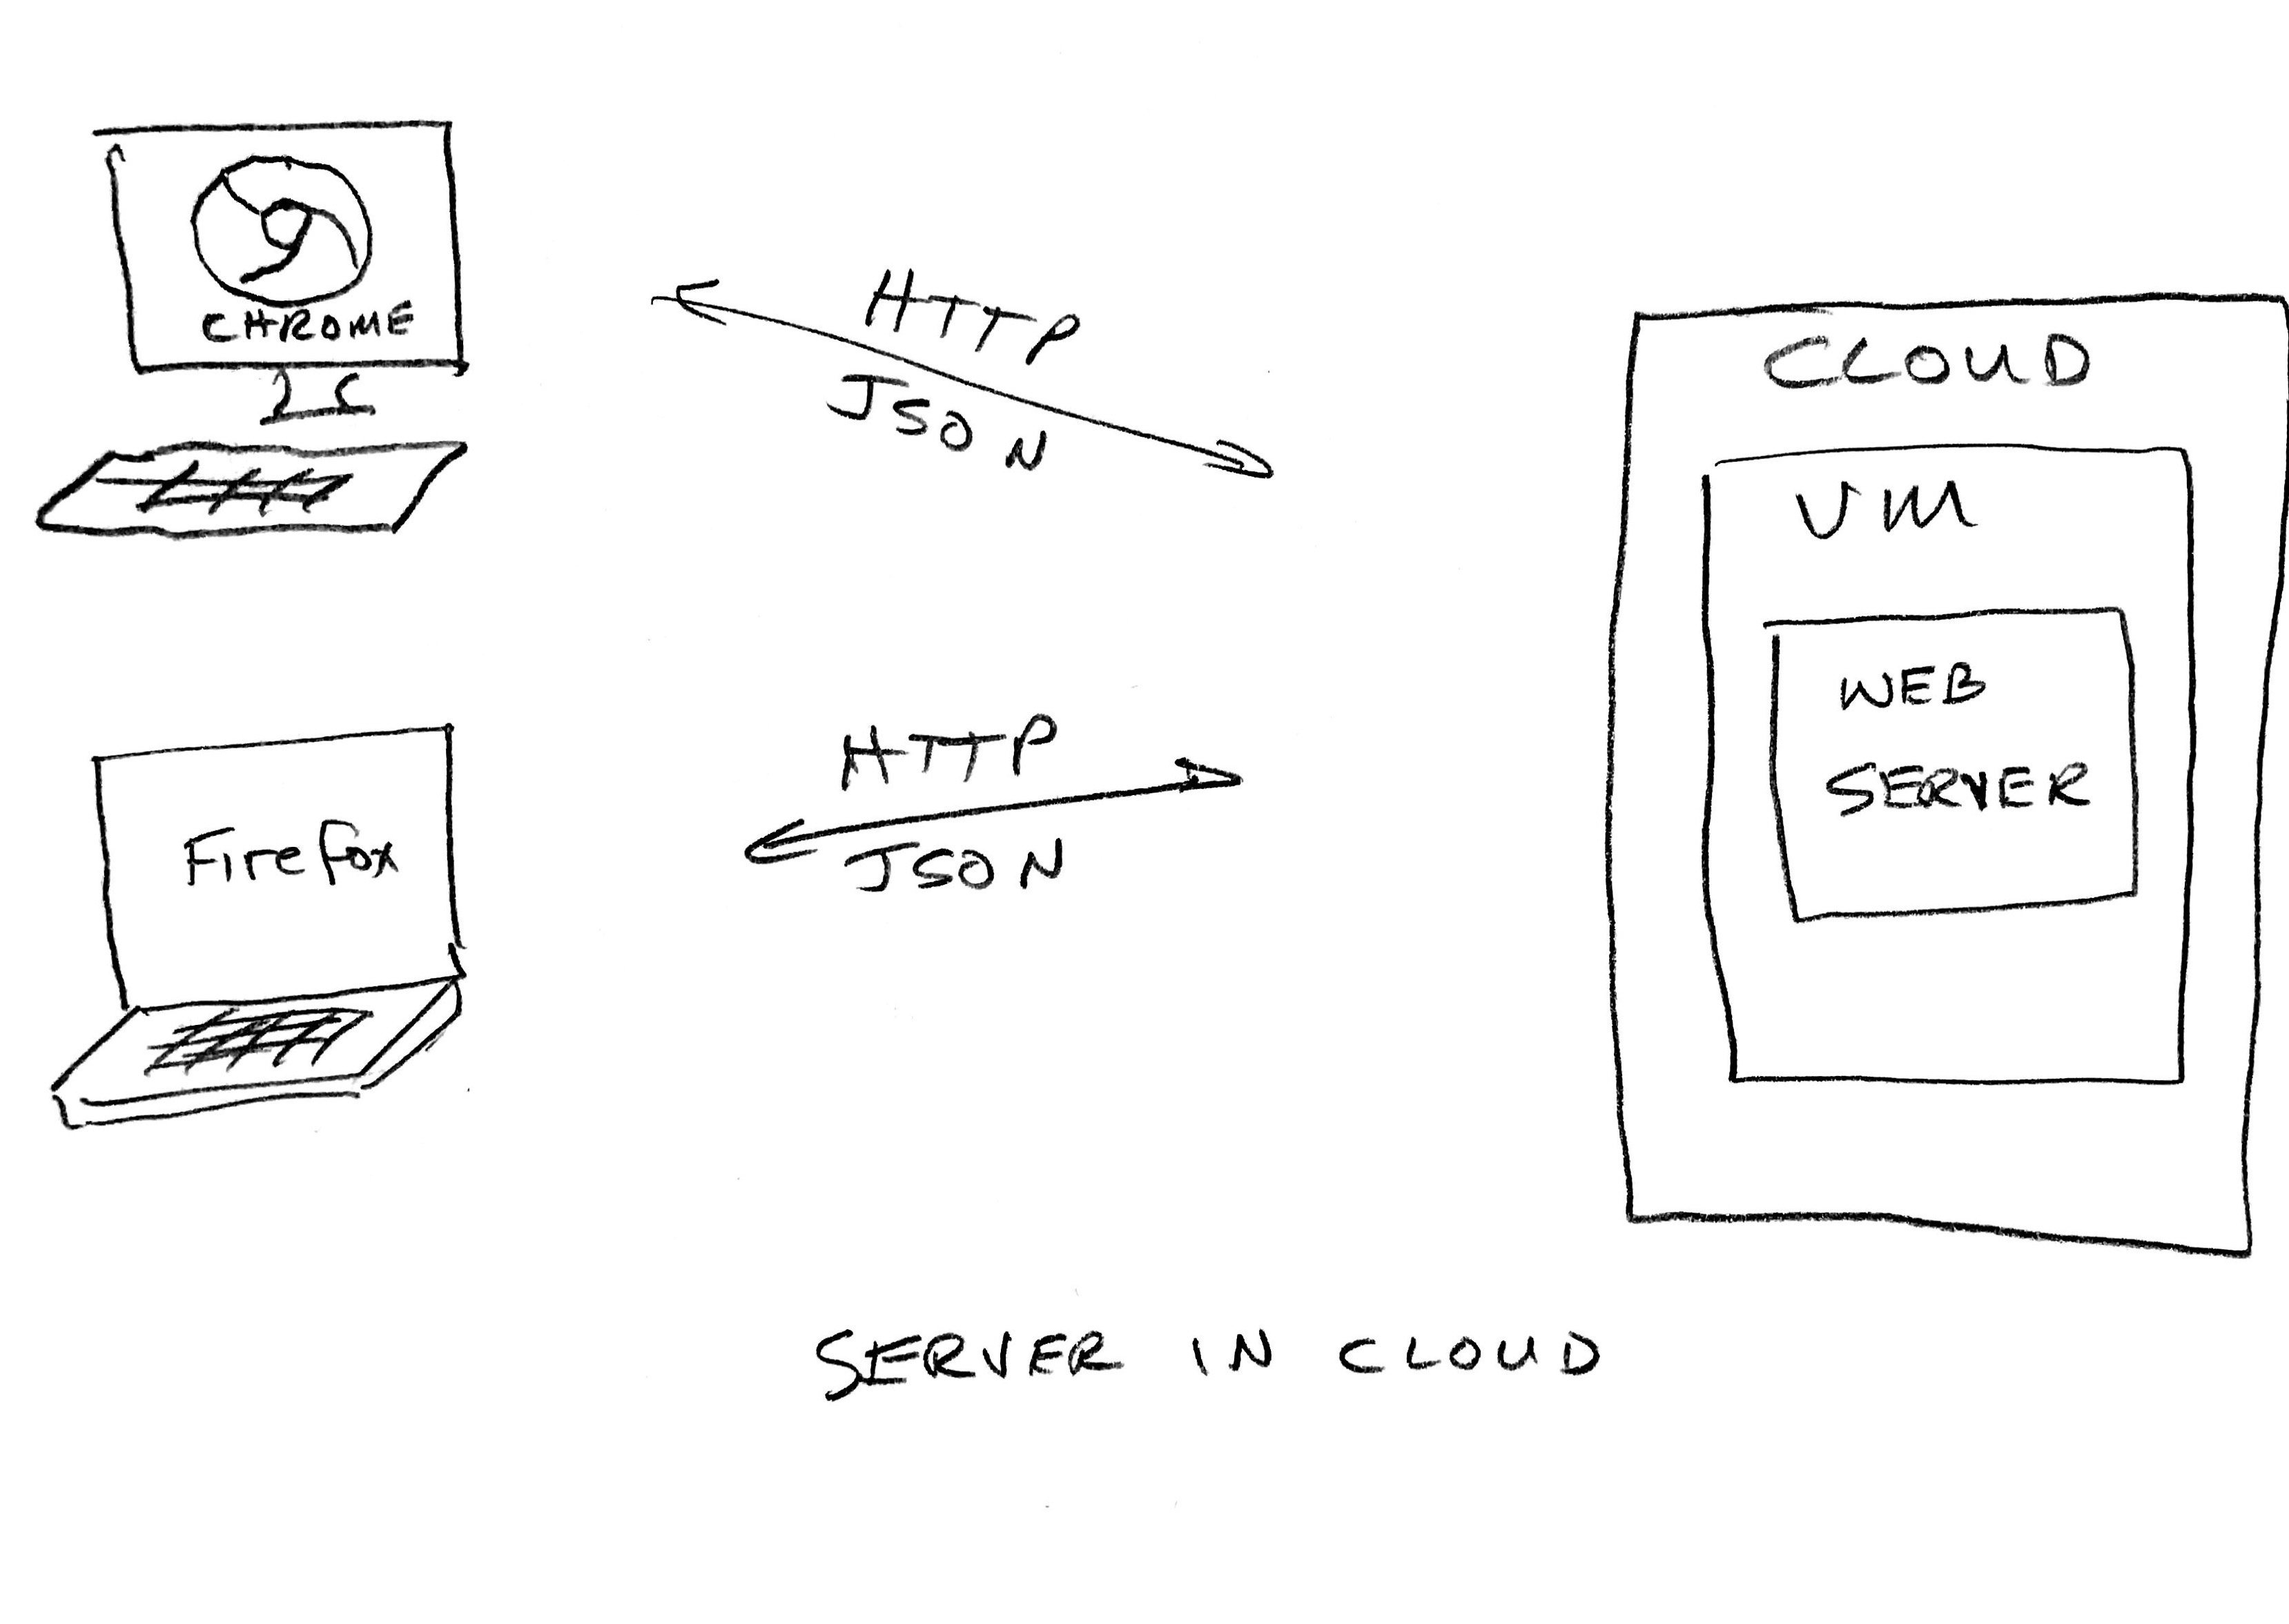 server in cloud.jpg